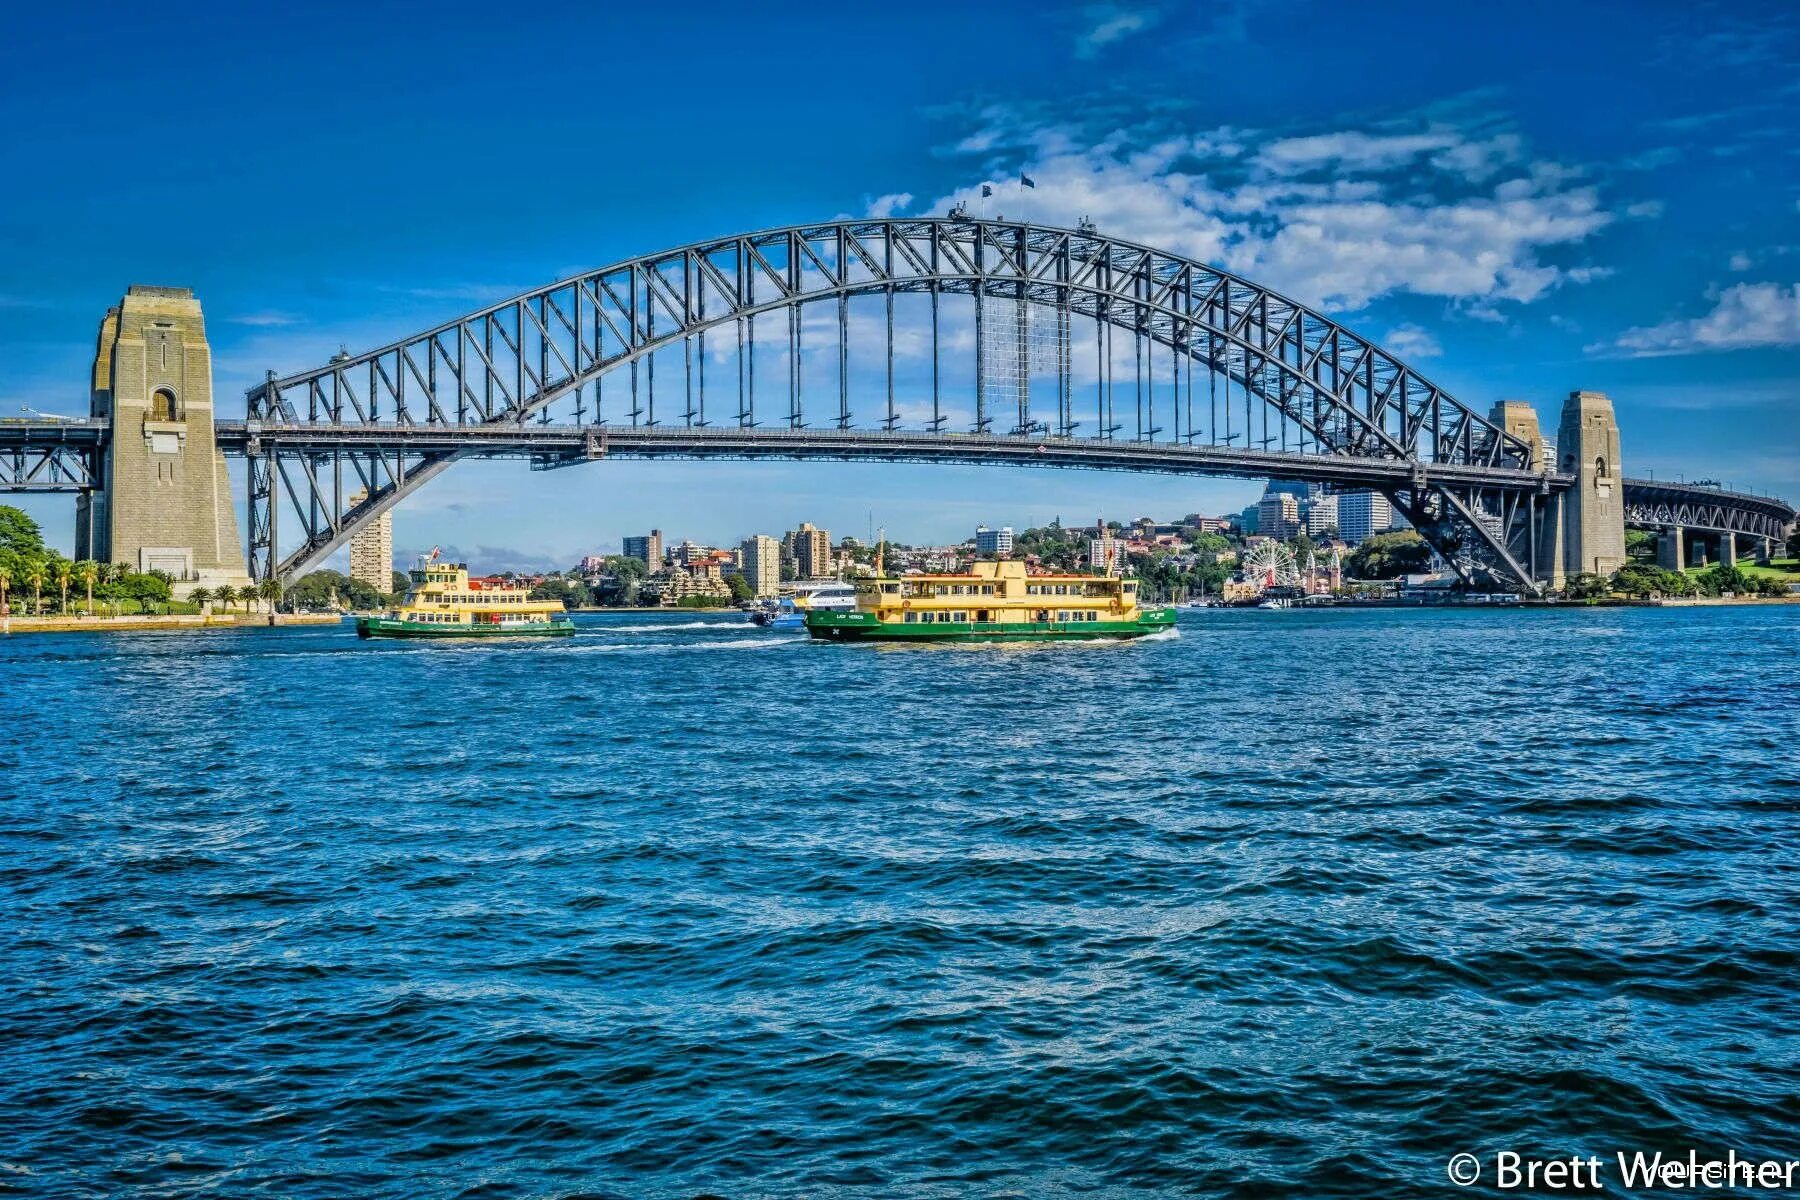 Харбор-бридж Сидней. Мост Харбор-бридж в Сиднее. Мост Харбор бридж в Австралии. Харбор-бридж (Сидней, Австралия).